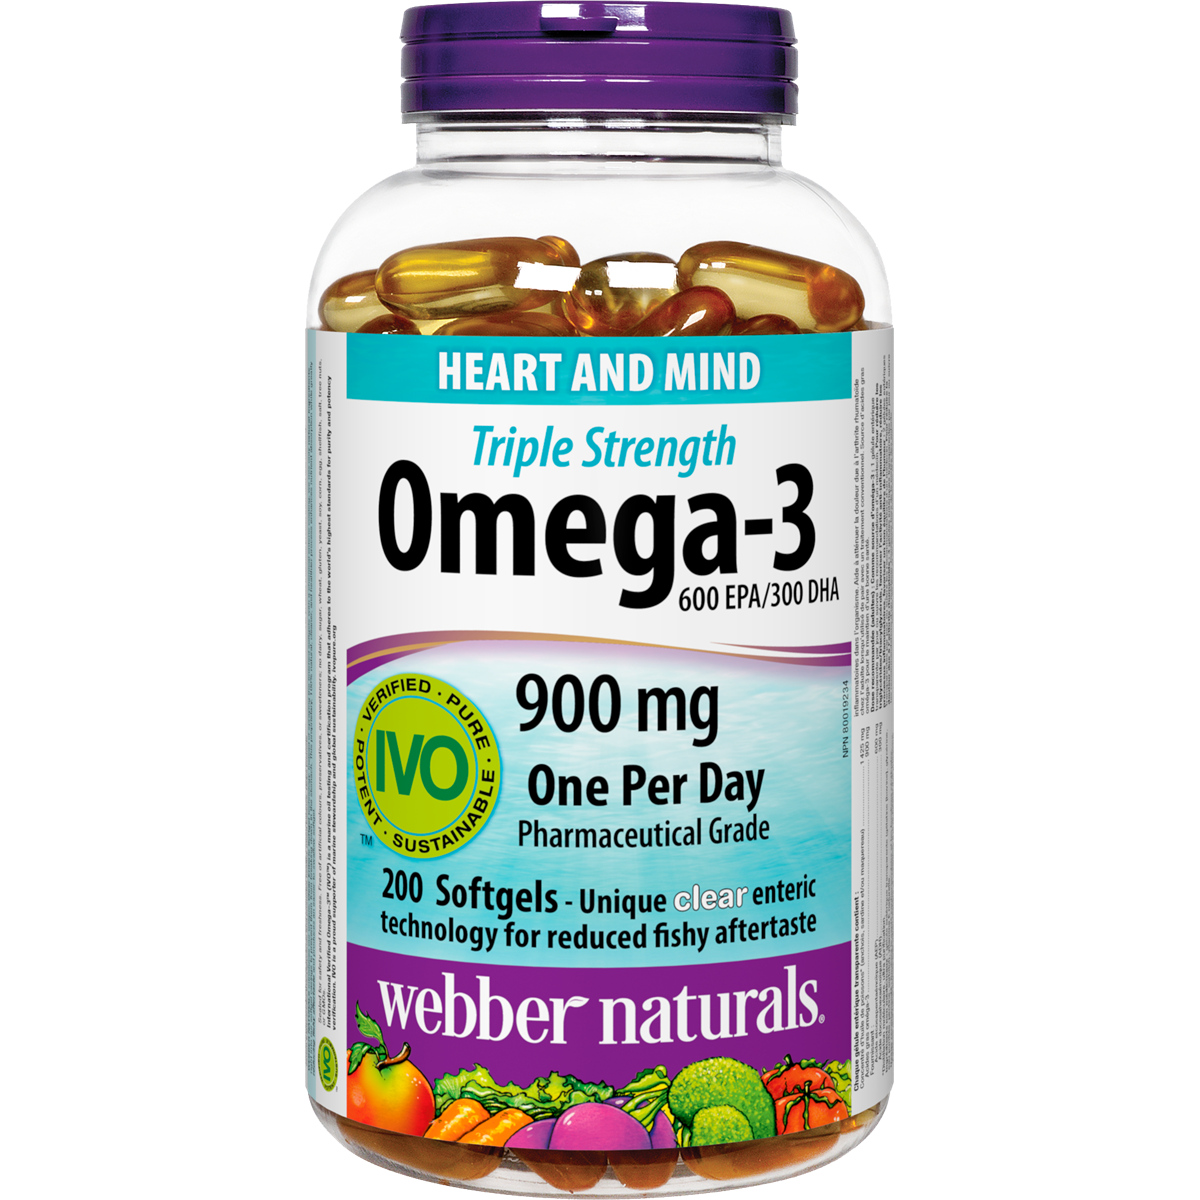 Triple Strength Omega-3 900 mg EPA/DHA Softgels for Webber Naturals|v|hi-res|WN5298